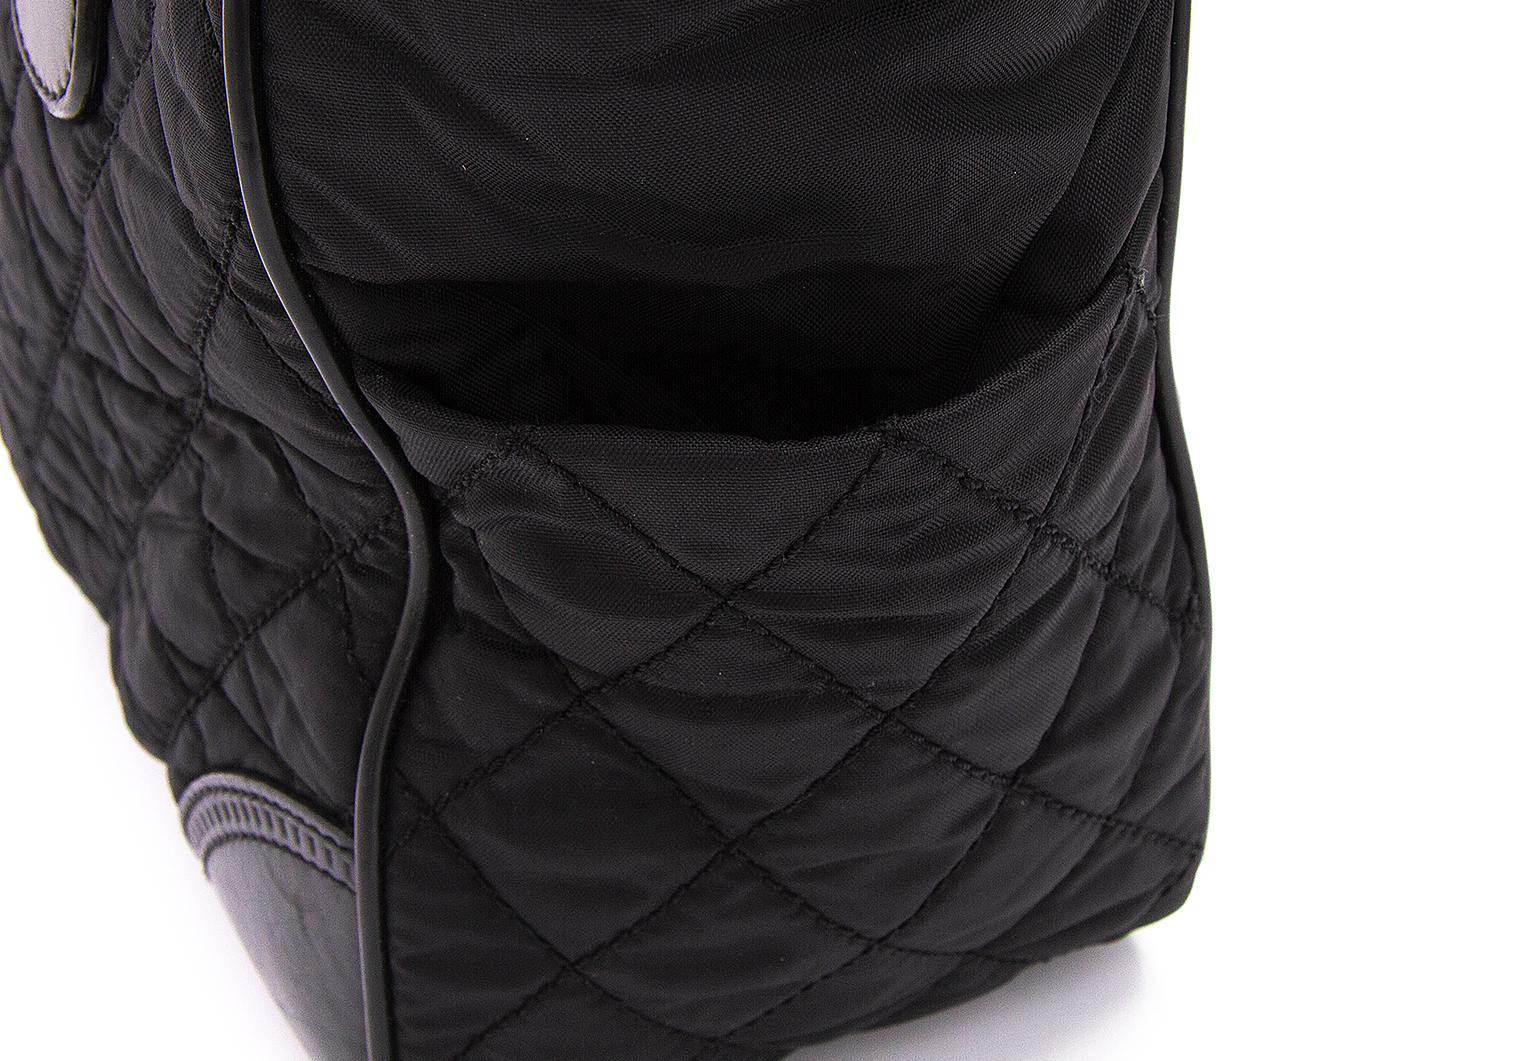 シャネル トートバッグ 10番台 パリニューヨーク ブラック 黒 ナイロン キルティング 普段使い 女性 レディース 通勤 通学 CHANEL coco tote bag nylon black